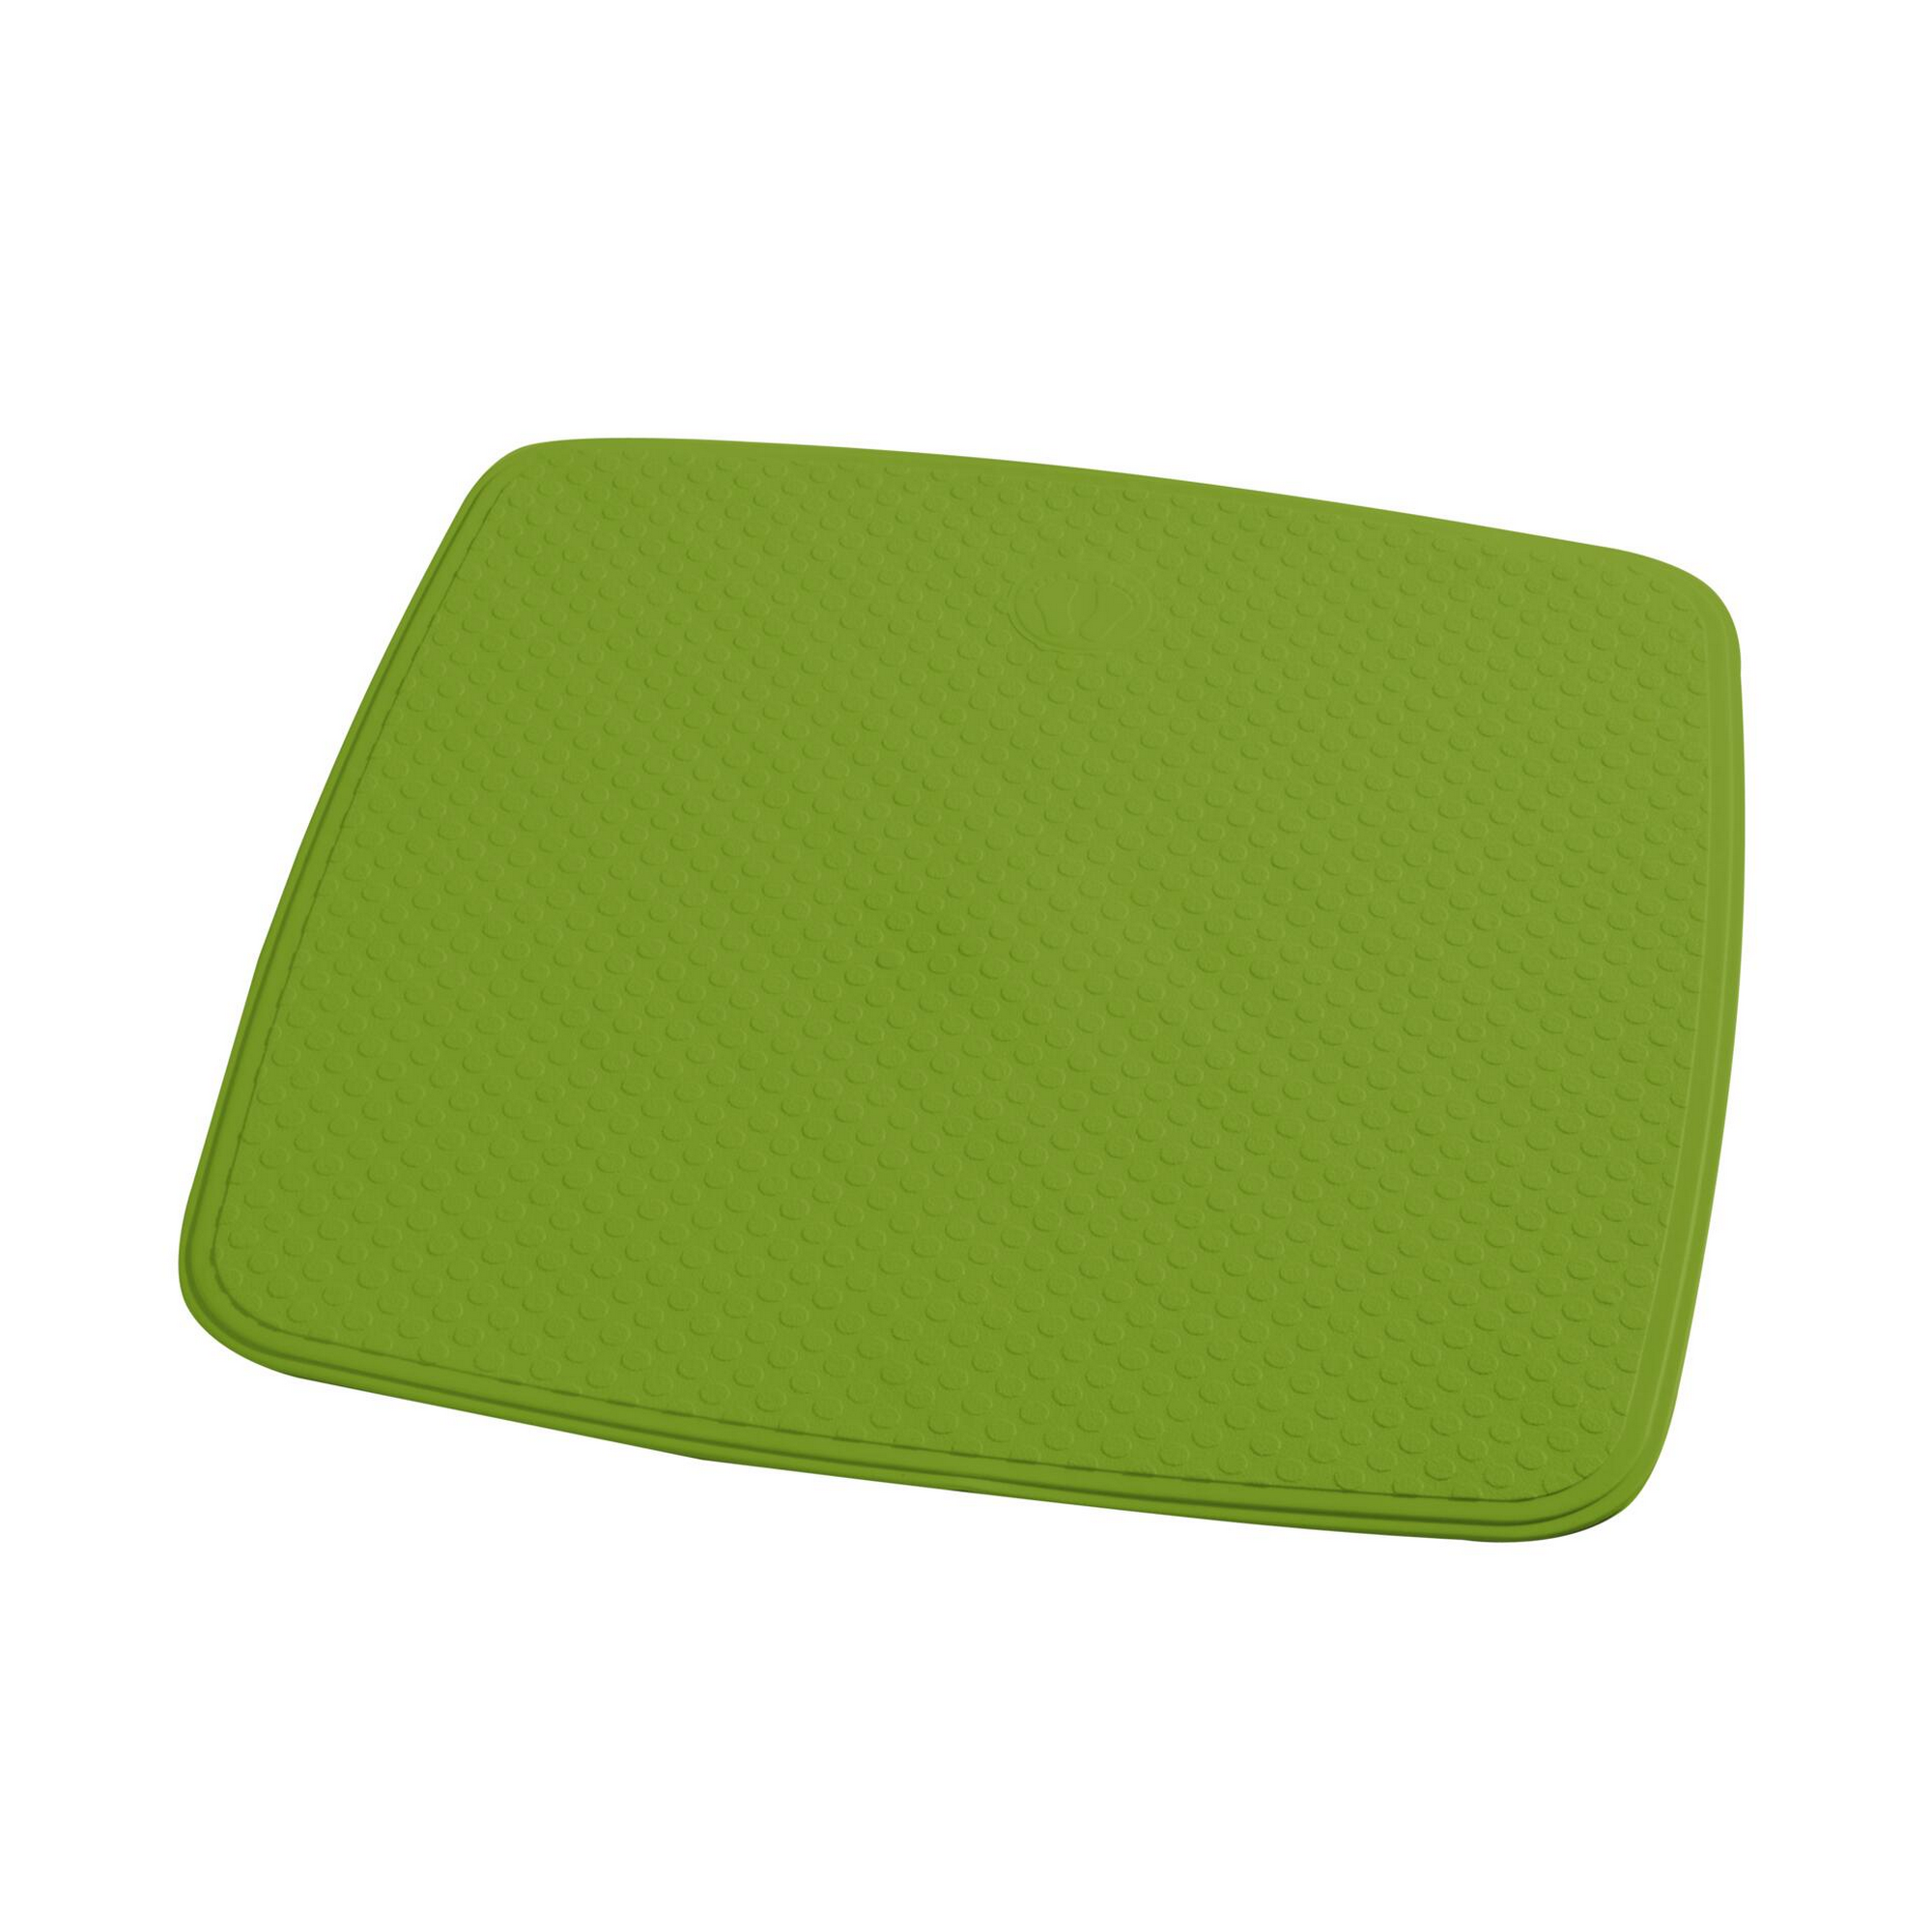 Duscheinlage 'Capri' lindgrün 54 x 54 cm + product picture